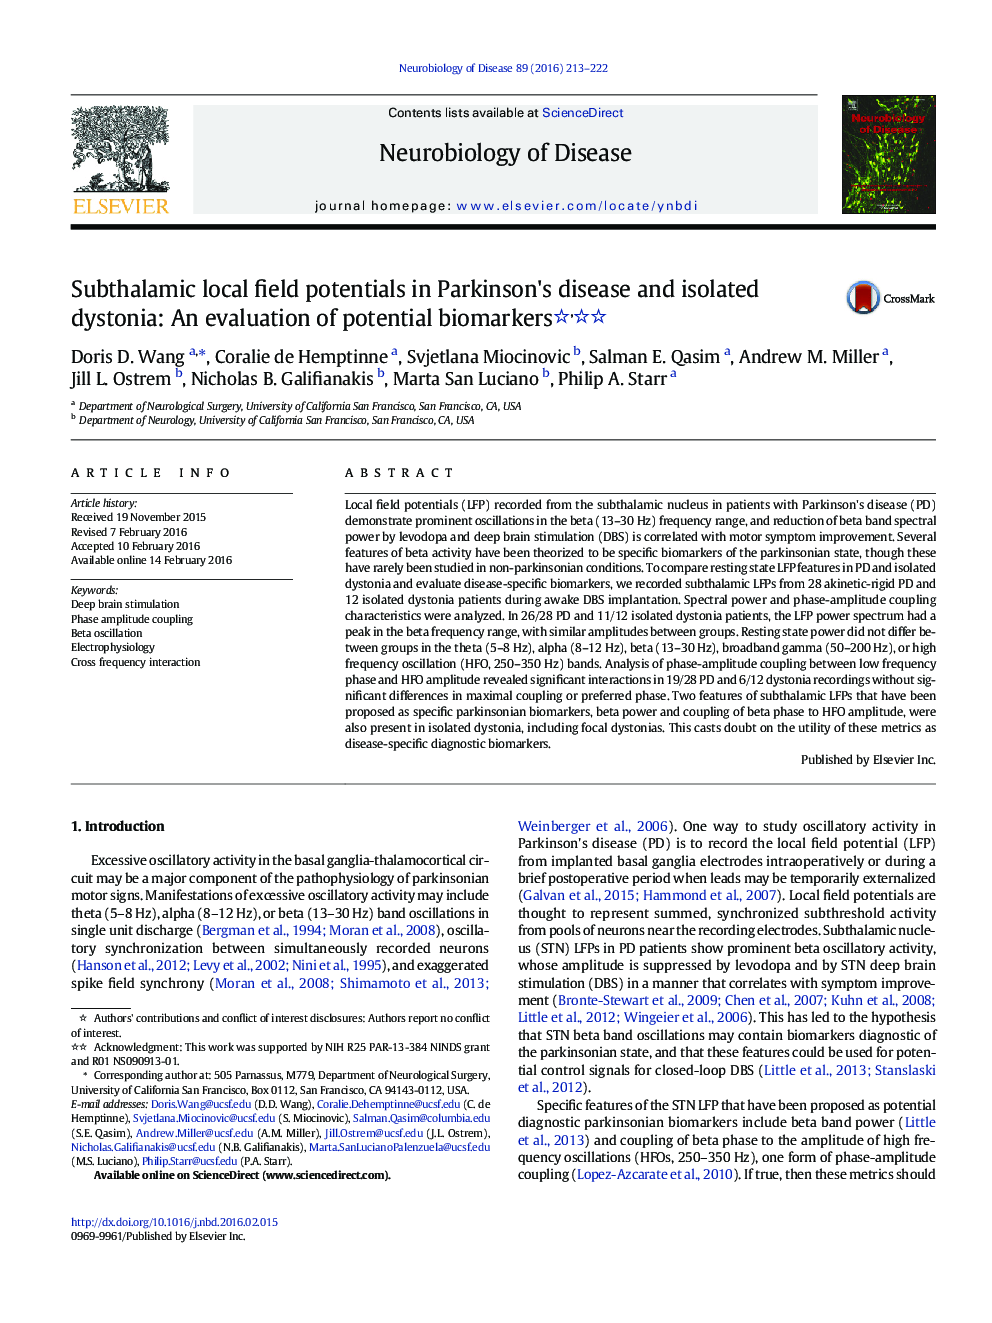 پتانسیل های محلی زیر زمین در بیماری پارکینسون و دیستونی جدا شده: ارزیابی بیومارکر های بالقوه 